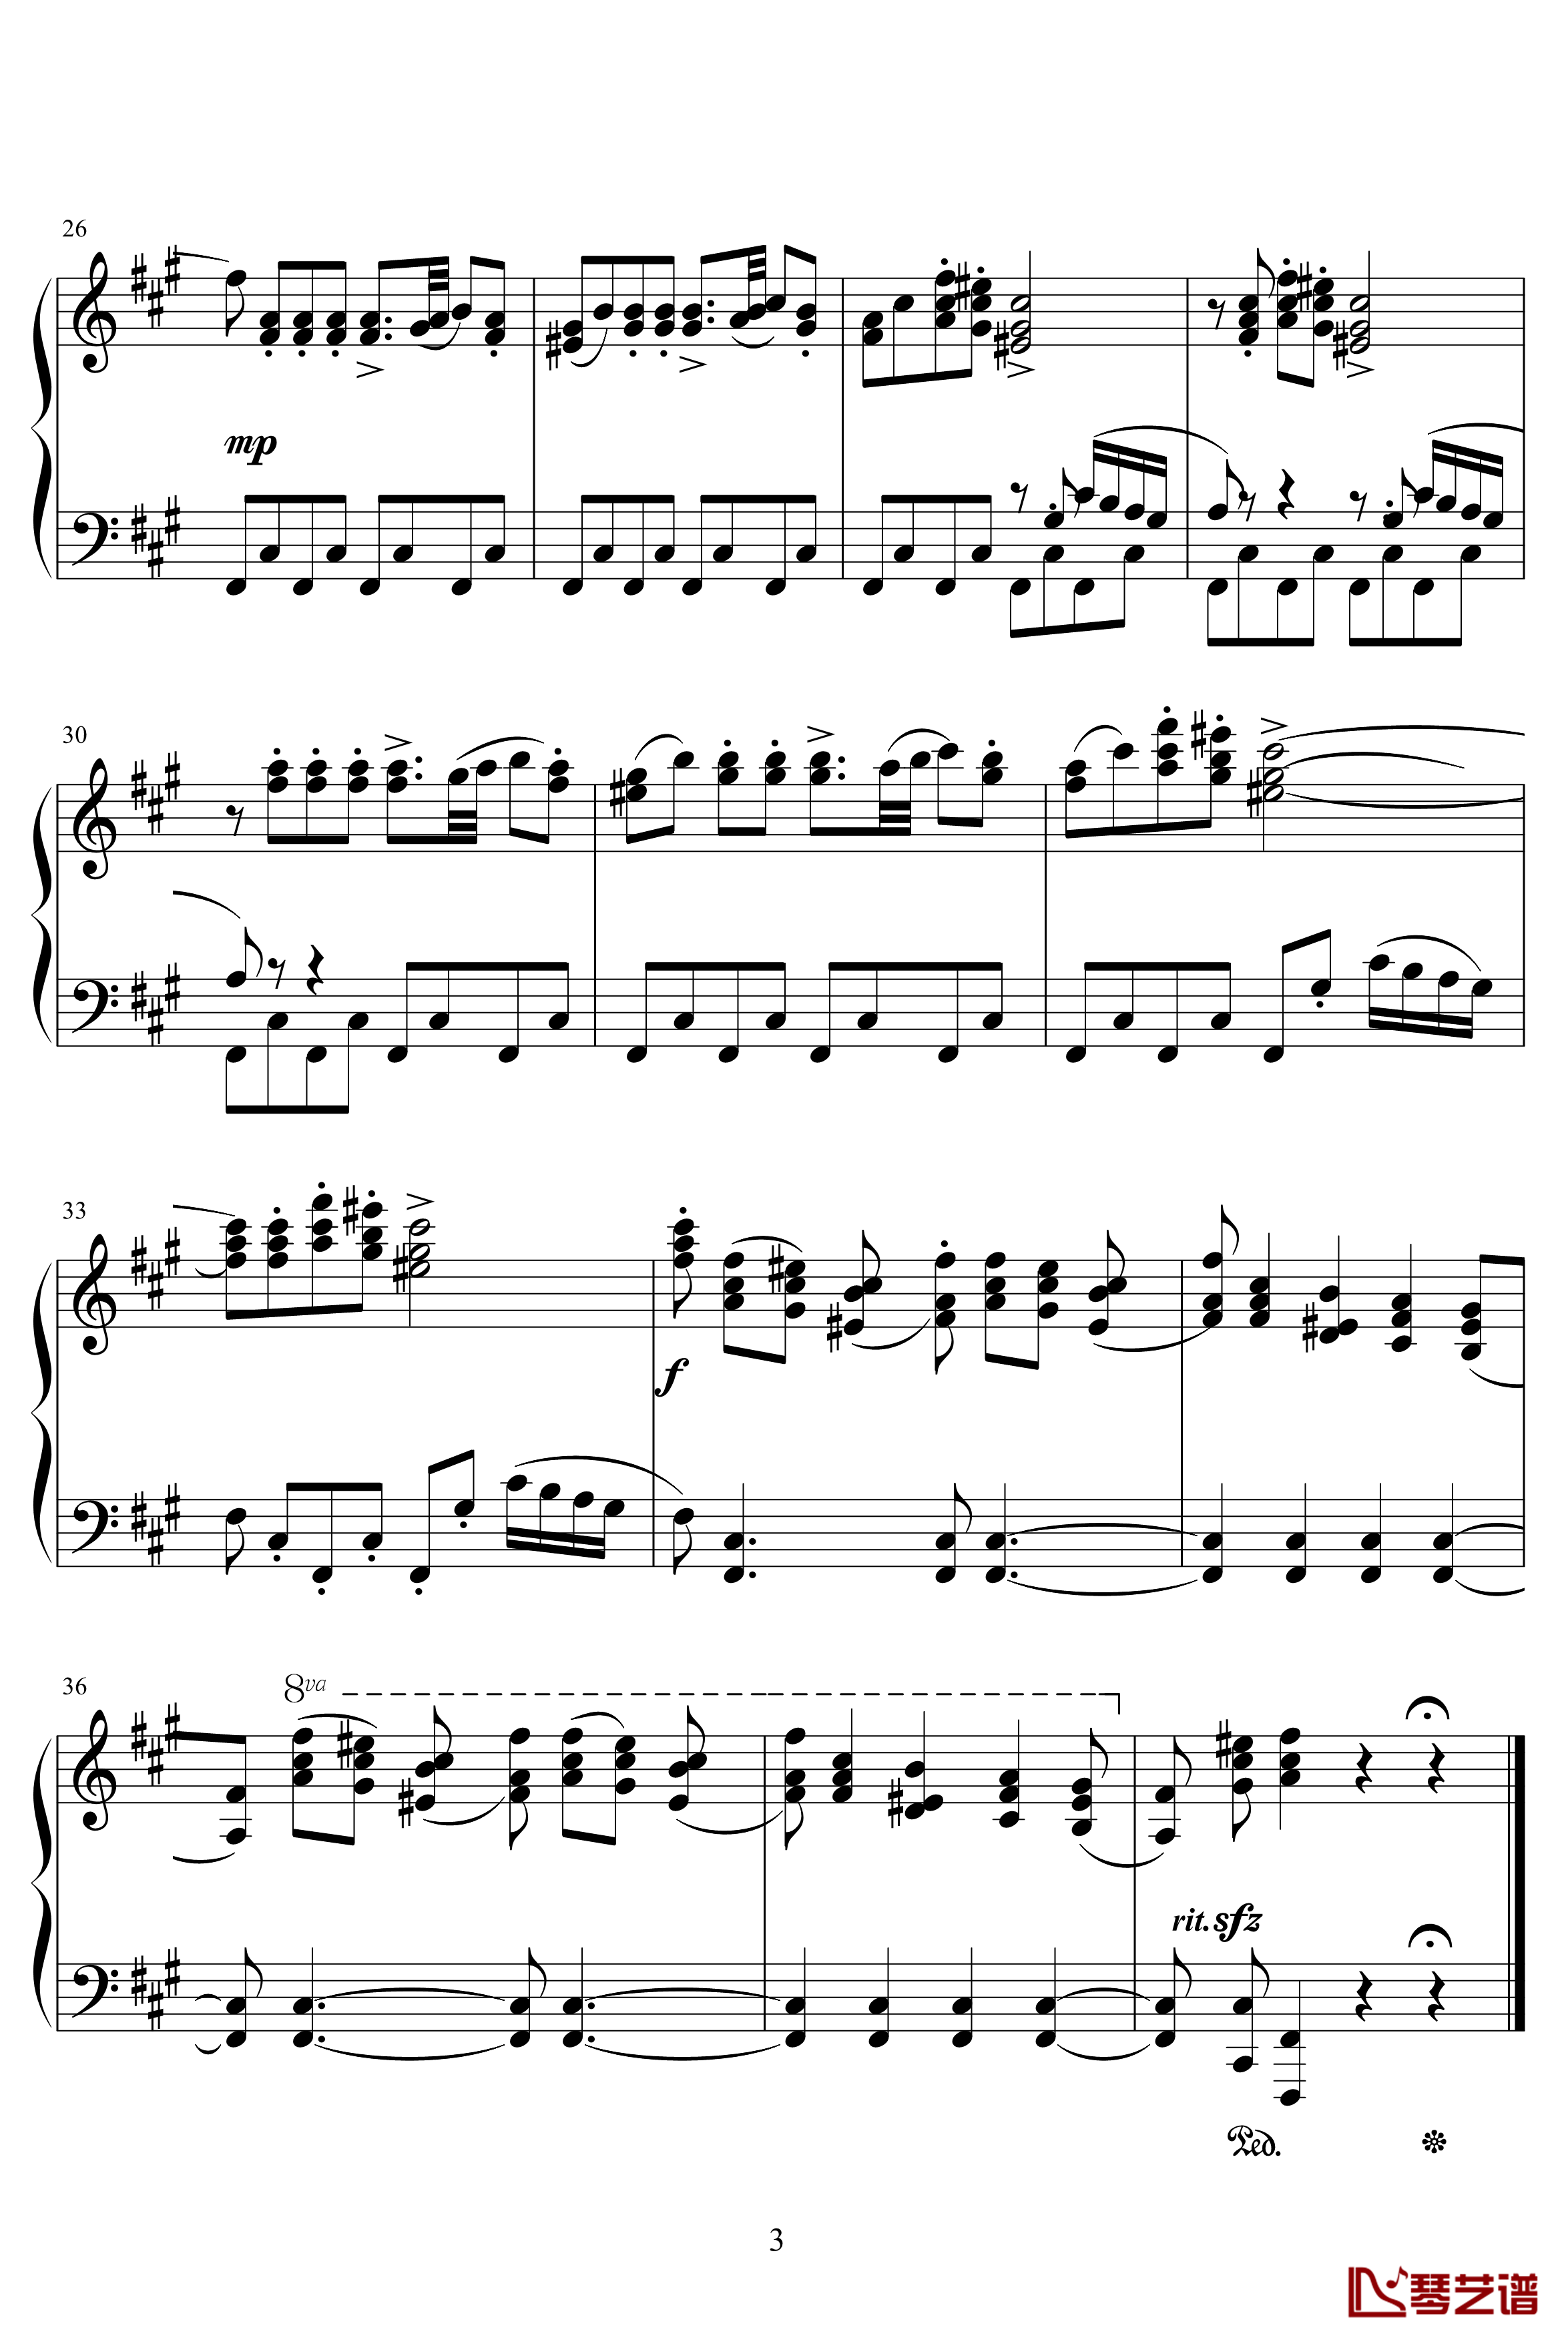 四小天鹅舞曲Charm2版钢琴谱-柴科夫斯基-Peter Ilyich Tchaikovsky3